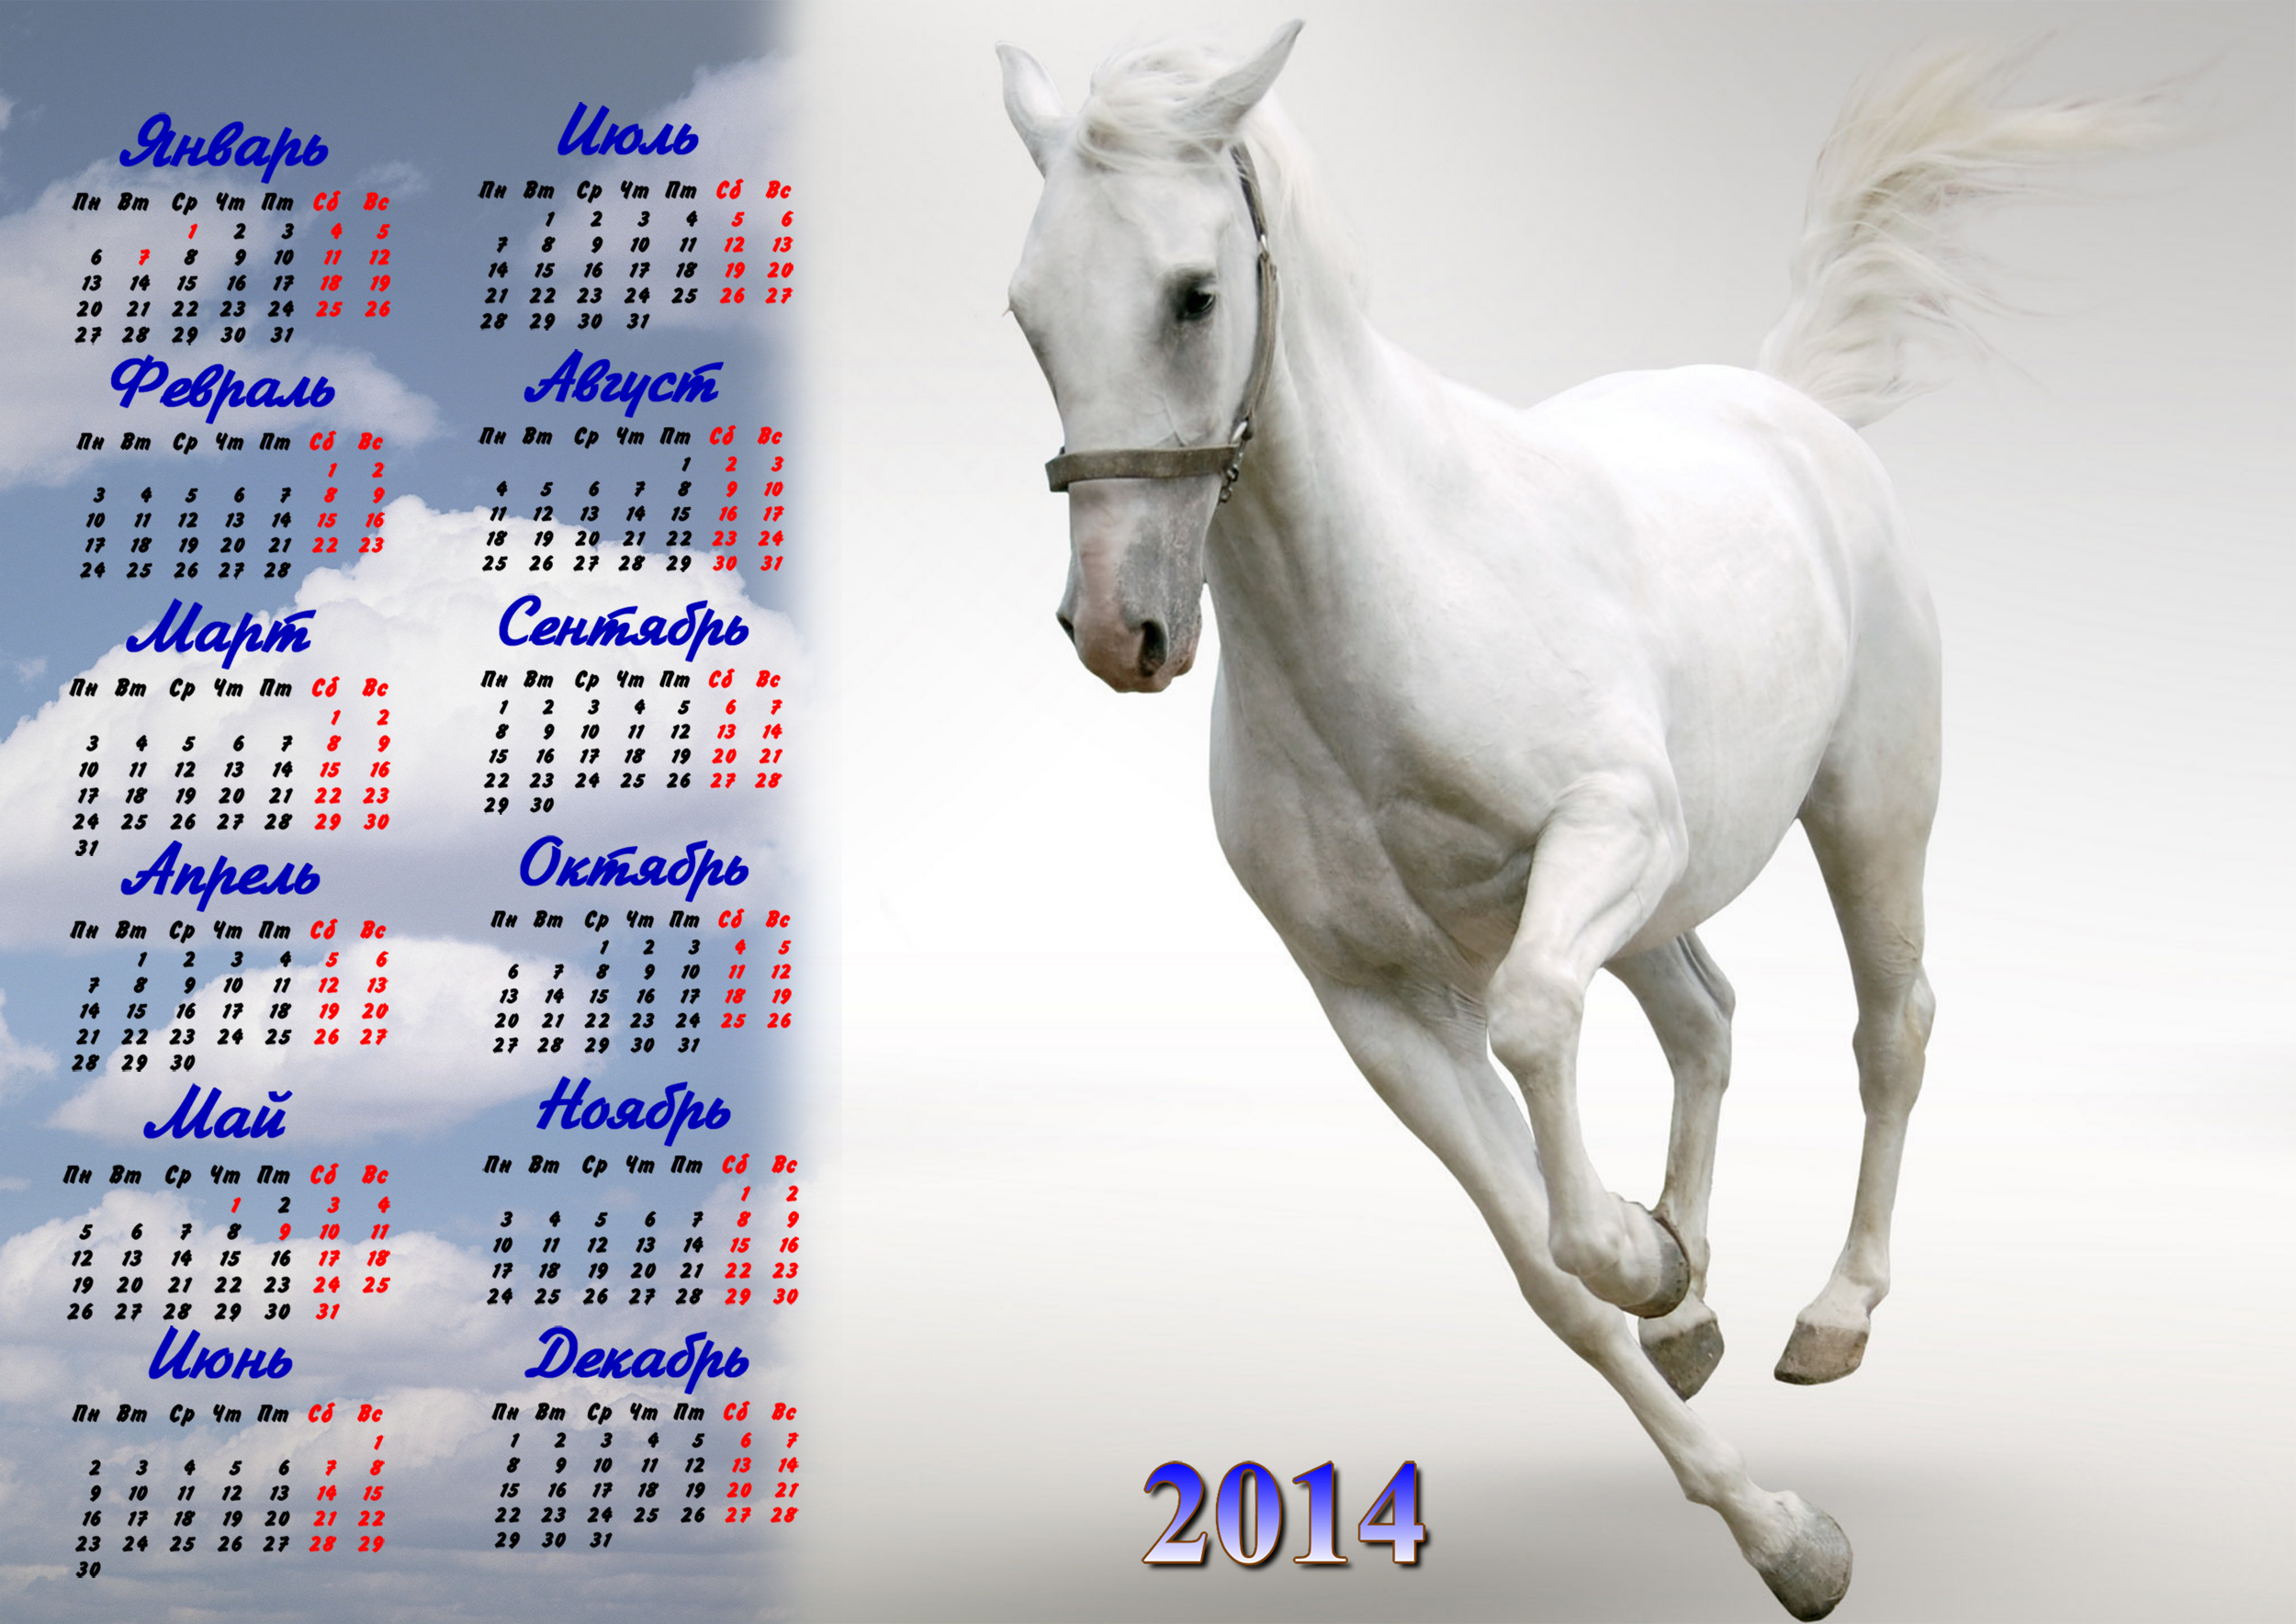 24 год год лошади. Год лошади 2014. Календарь 2014 год лошади. Календарь 2014 года. Год лошади календарь.